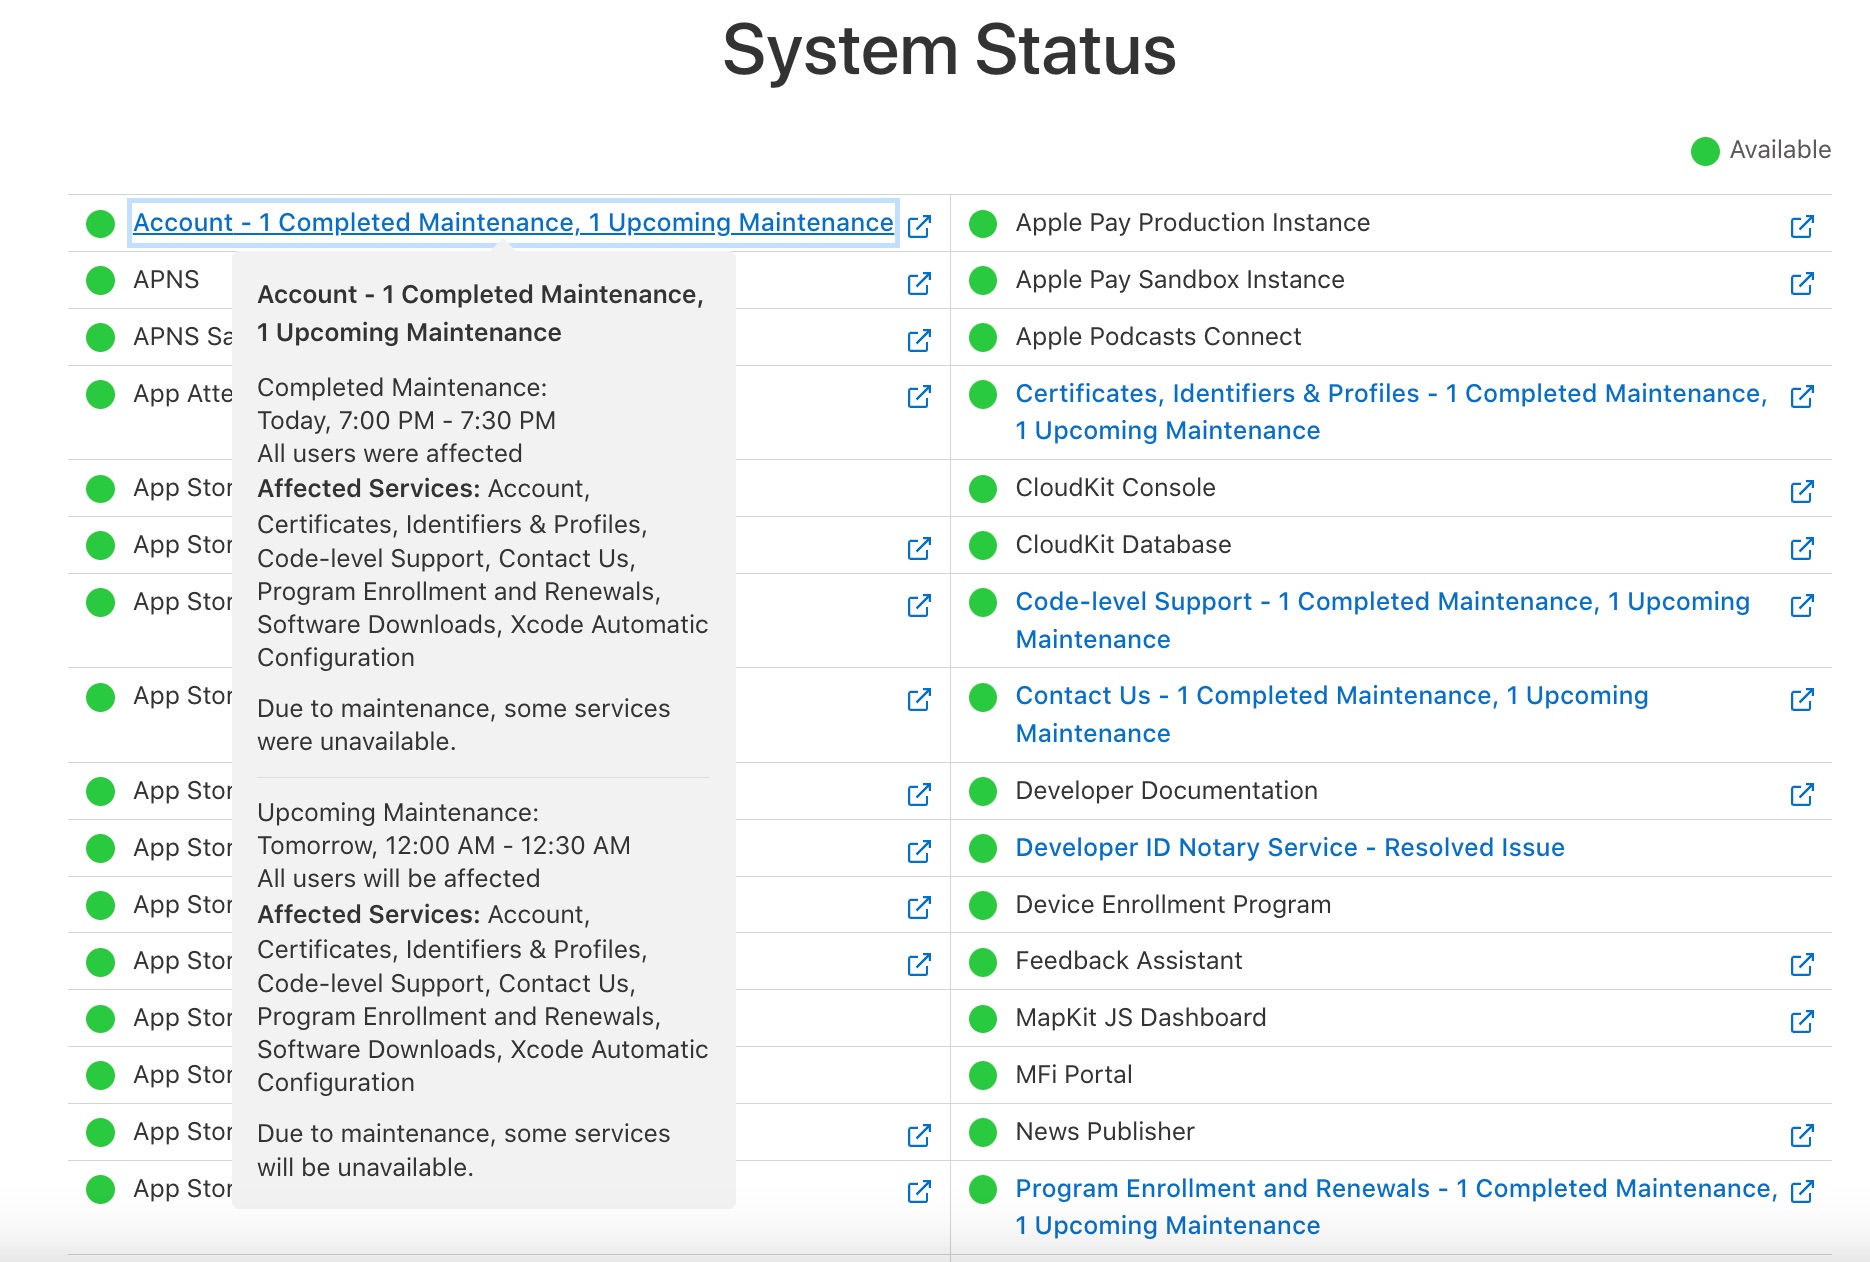 La página de estatus de sevidores dirigida a desarrolladores muestra que hay un mantenimiento en el sistema de cuentas de usuario